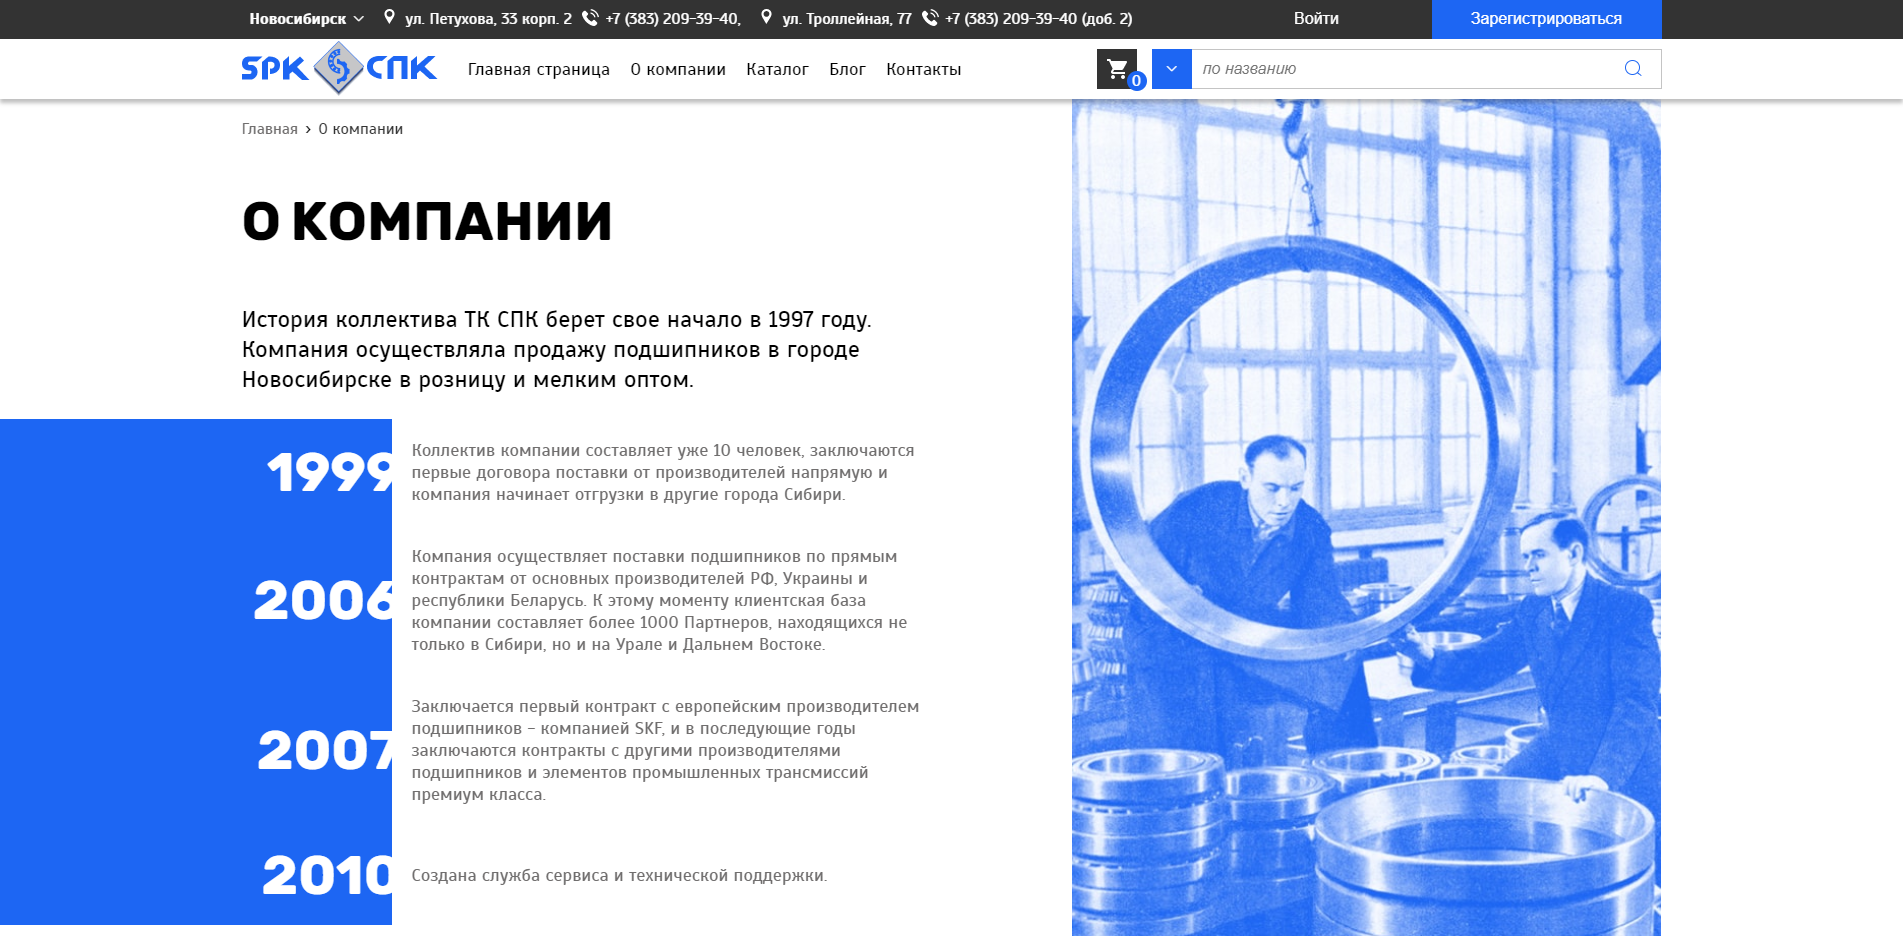 сибирская подшипниковая компания: сайт-каталог с функционалом интернет-магазина